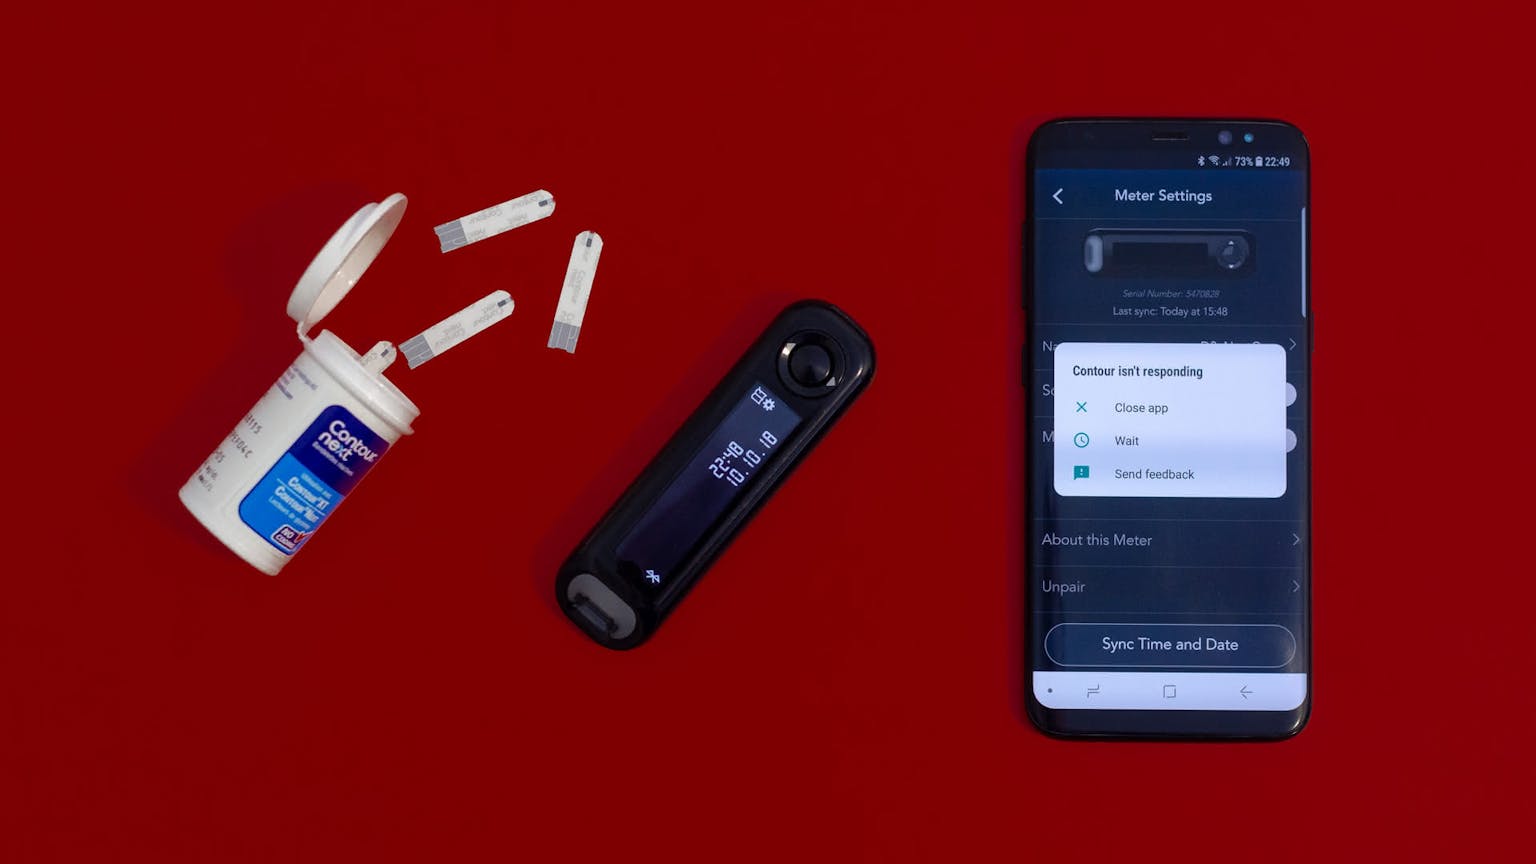 Een prikpen, teststrips, een bloedsuikermeter een een smartphone om zelf je bloedsuiker te meten bij diabetes.